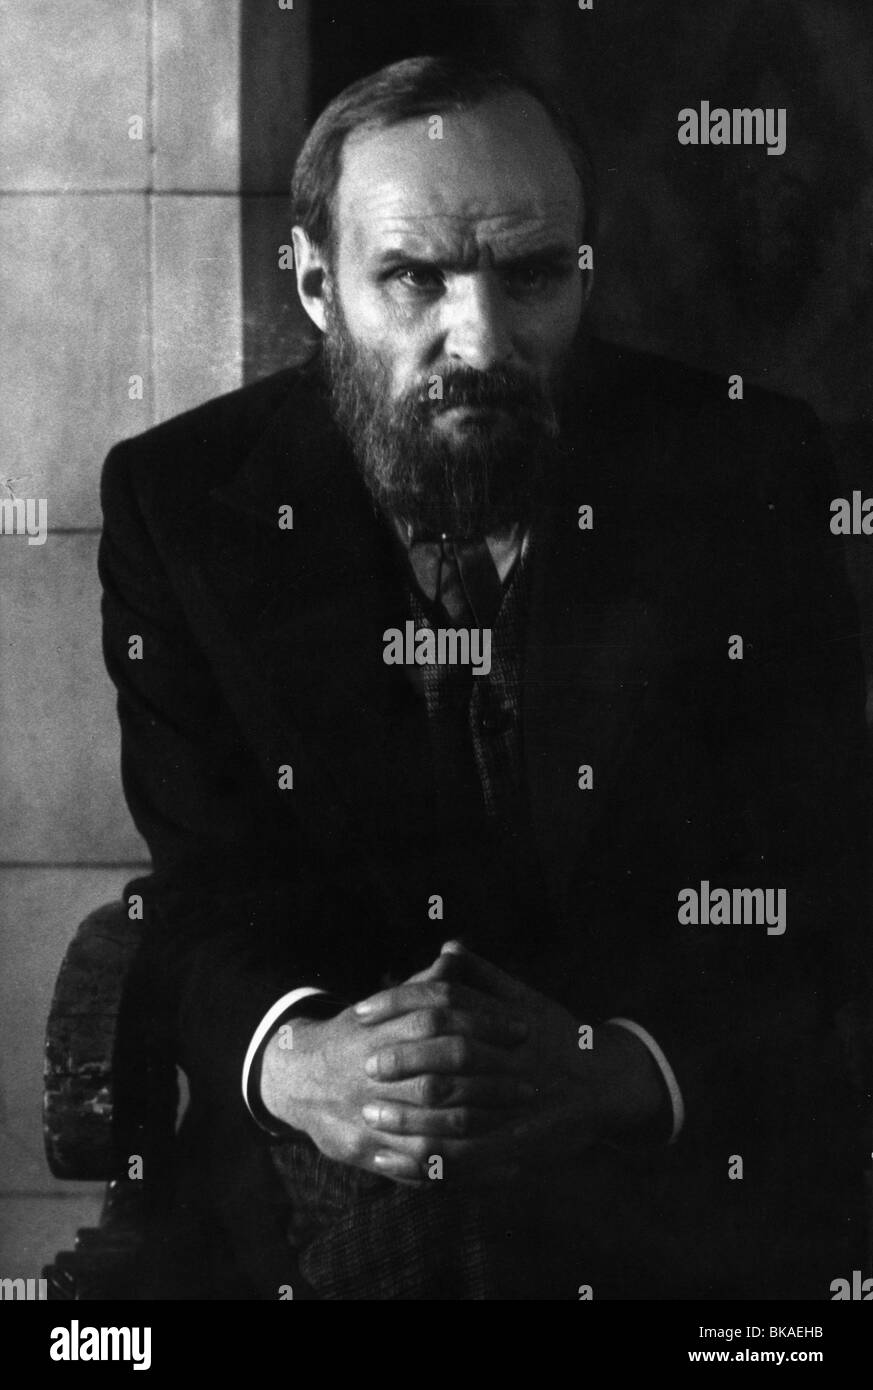 Dvadtsat Shest Niere Iz Zhizni Dostoevskogo zwanzig sechs Tagen vom Leben von Dostoyevsky Jahr: 1981 Sowjetunion Regisseur Aleksandr Stockfoto